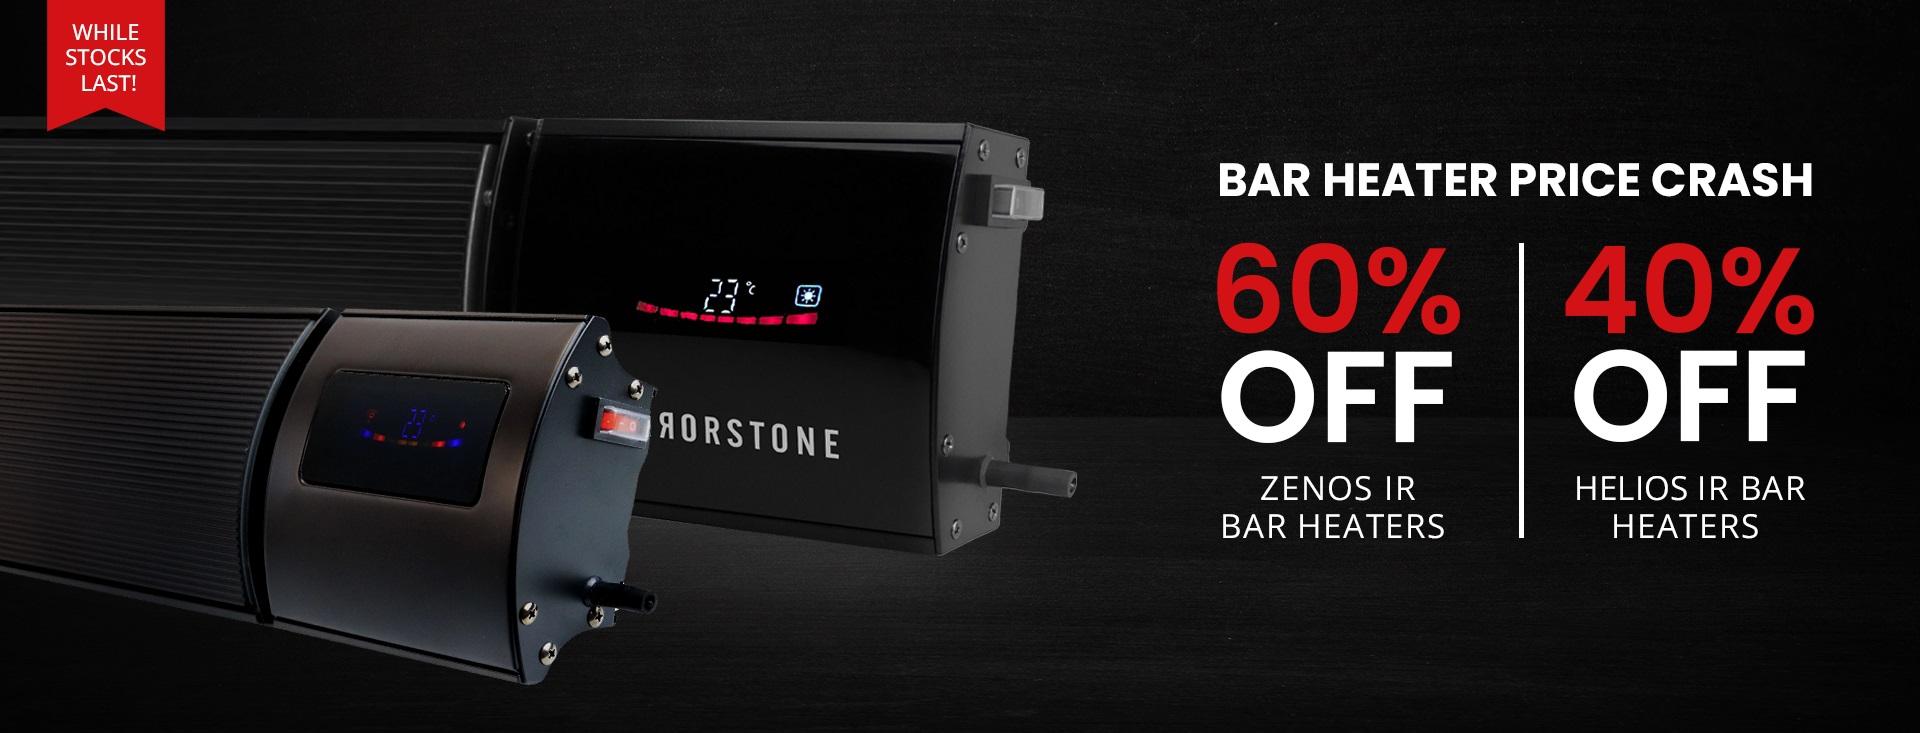 60% OFF Zenos IR Bar Heaters!